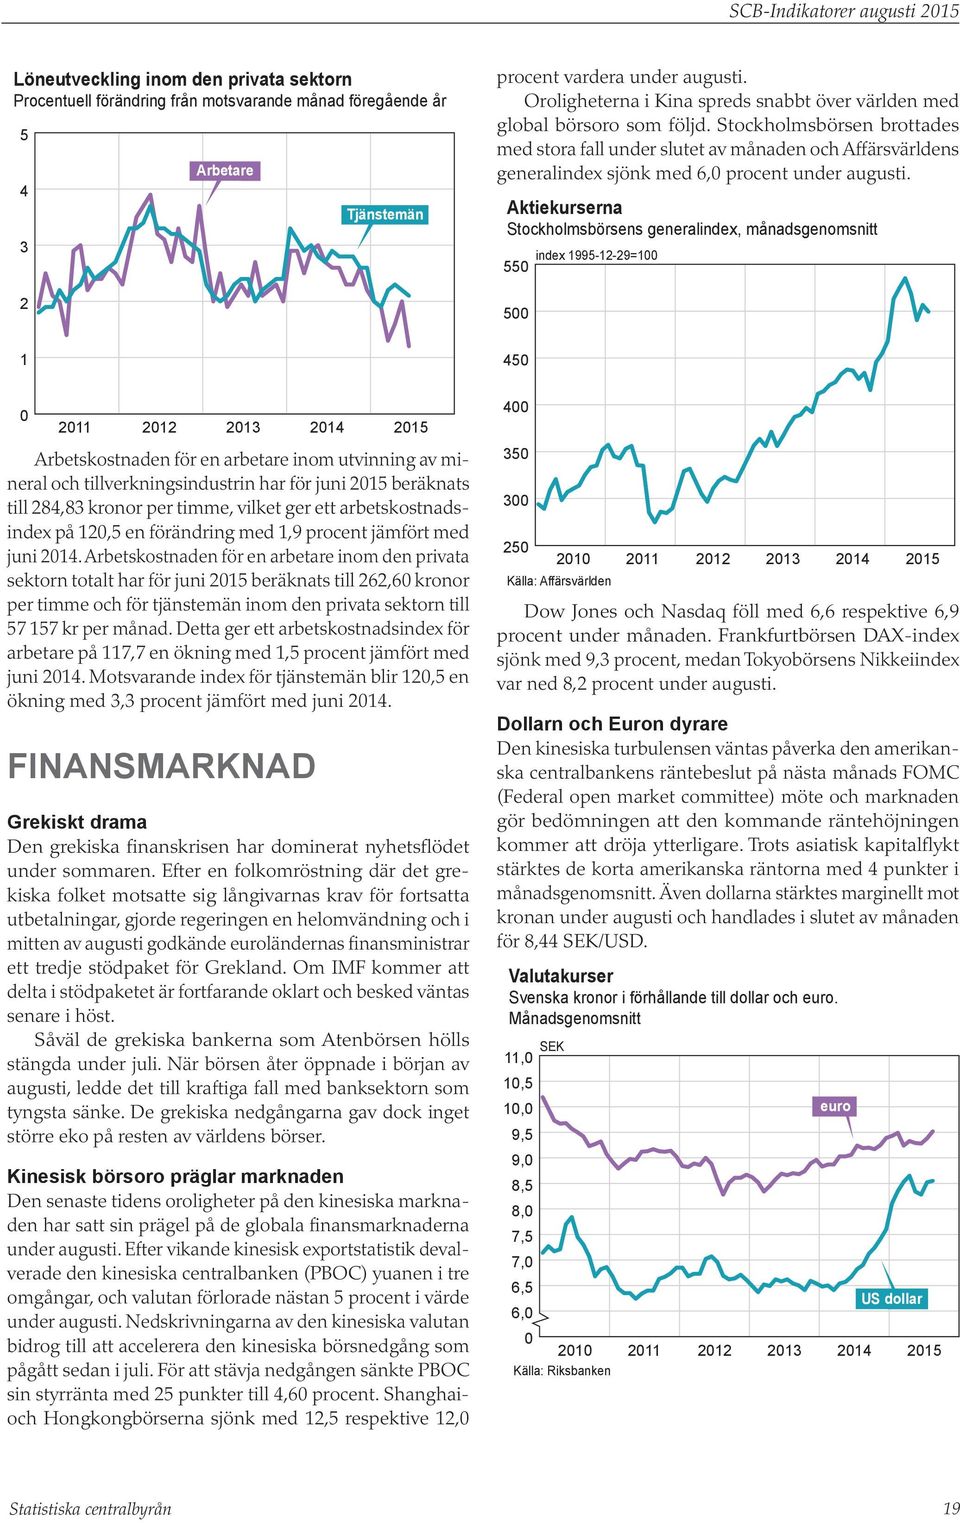 Stockholmsbörsen brottades med stora fall under slutet av månaden och Affärsvärldens generalindex sjönk med 6, procent under augusti.